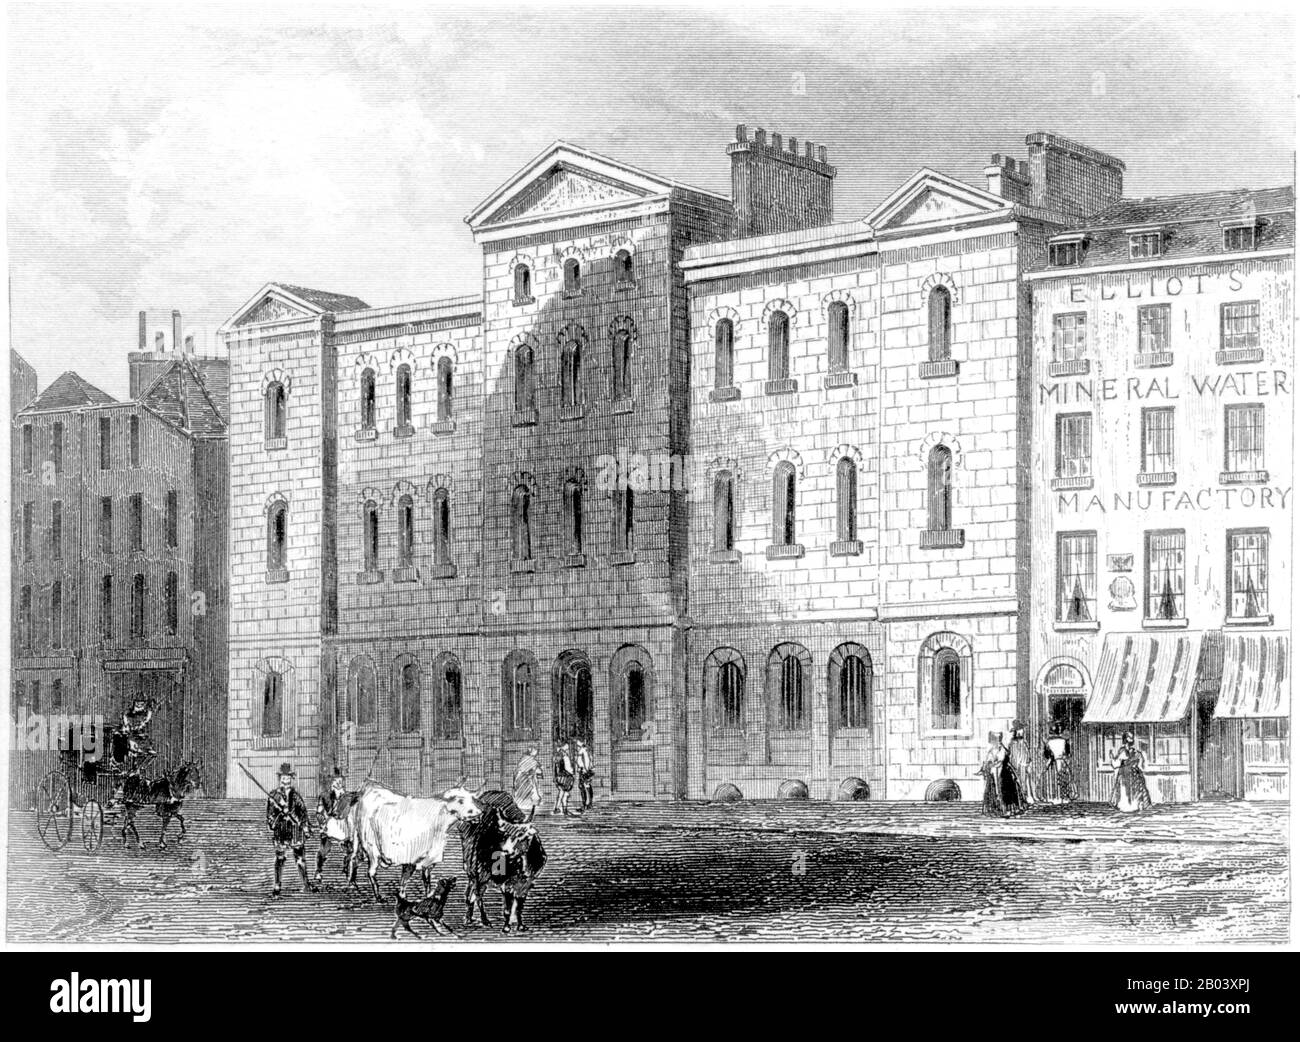 Eine Gravur von Giltspur Street compter, London, UK, gescannt in hoher Auflösung aus einem Buch, das 1851 gedruckt wurde. Für urheberrechtlich frei gehalten. Stockfoto